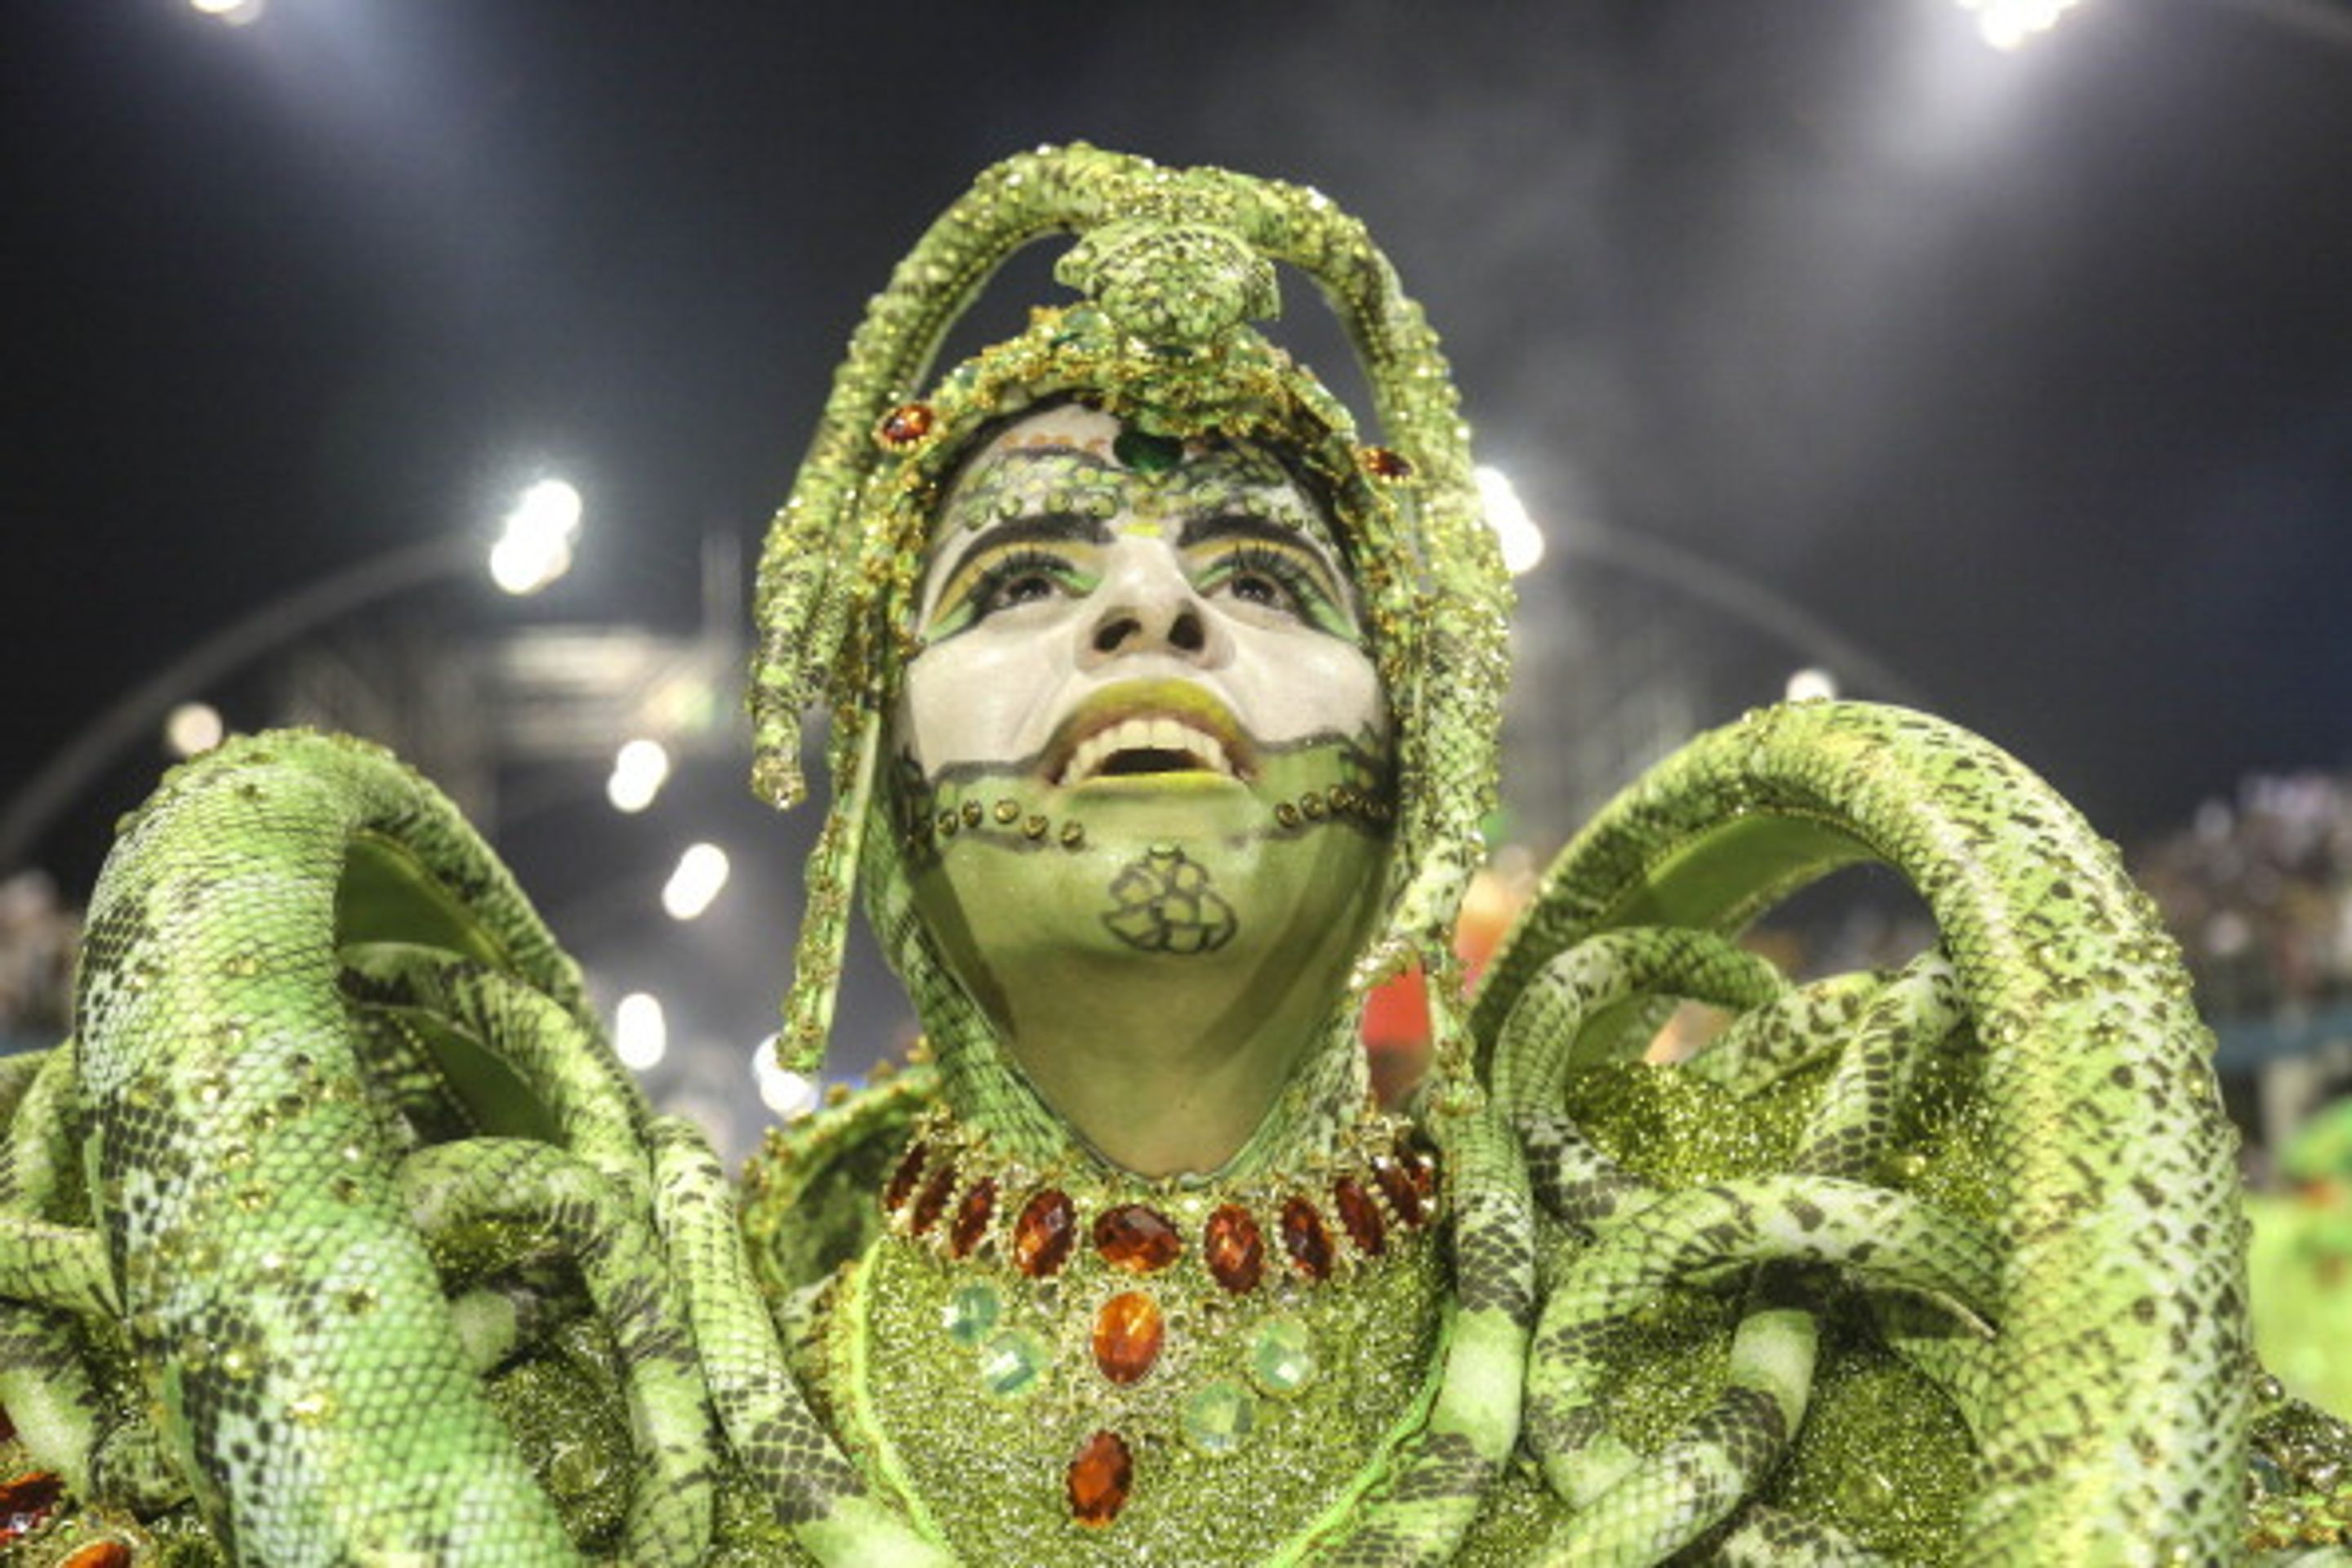 Karneval v Riu de Janeru - 3 - Brazílie žije všemi barvami. Karneval začal! (17/19)